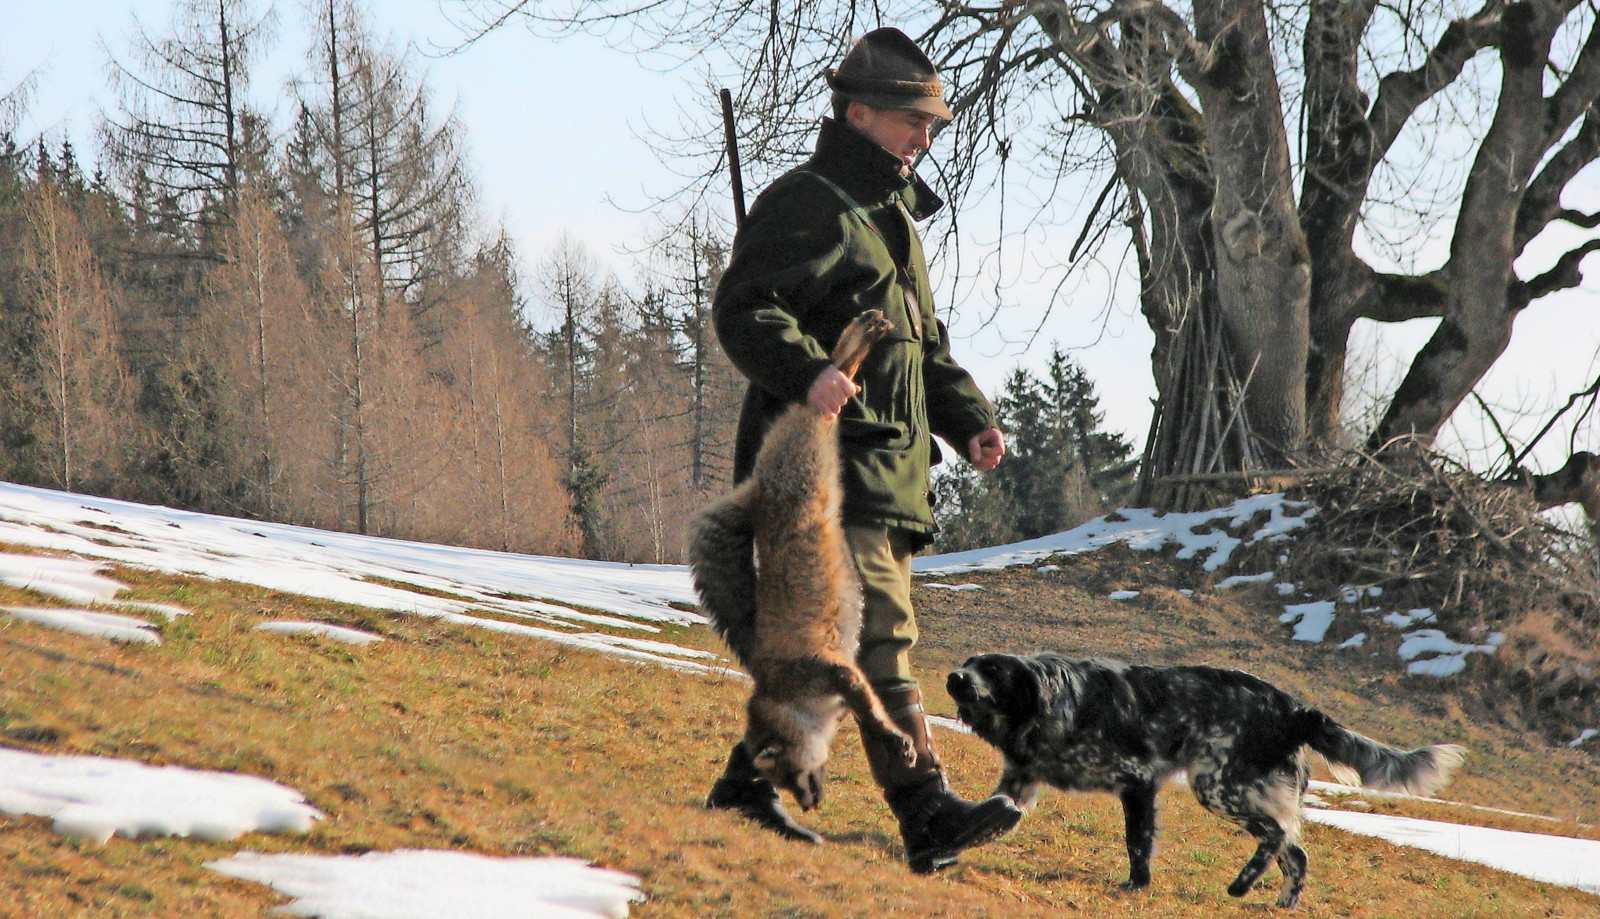 Jagdhunde sowie Jägerinnen und Jäger haben durch den Kontakt zu Wild ein erhöhtes Infektionsrisiko.